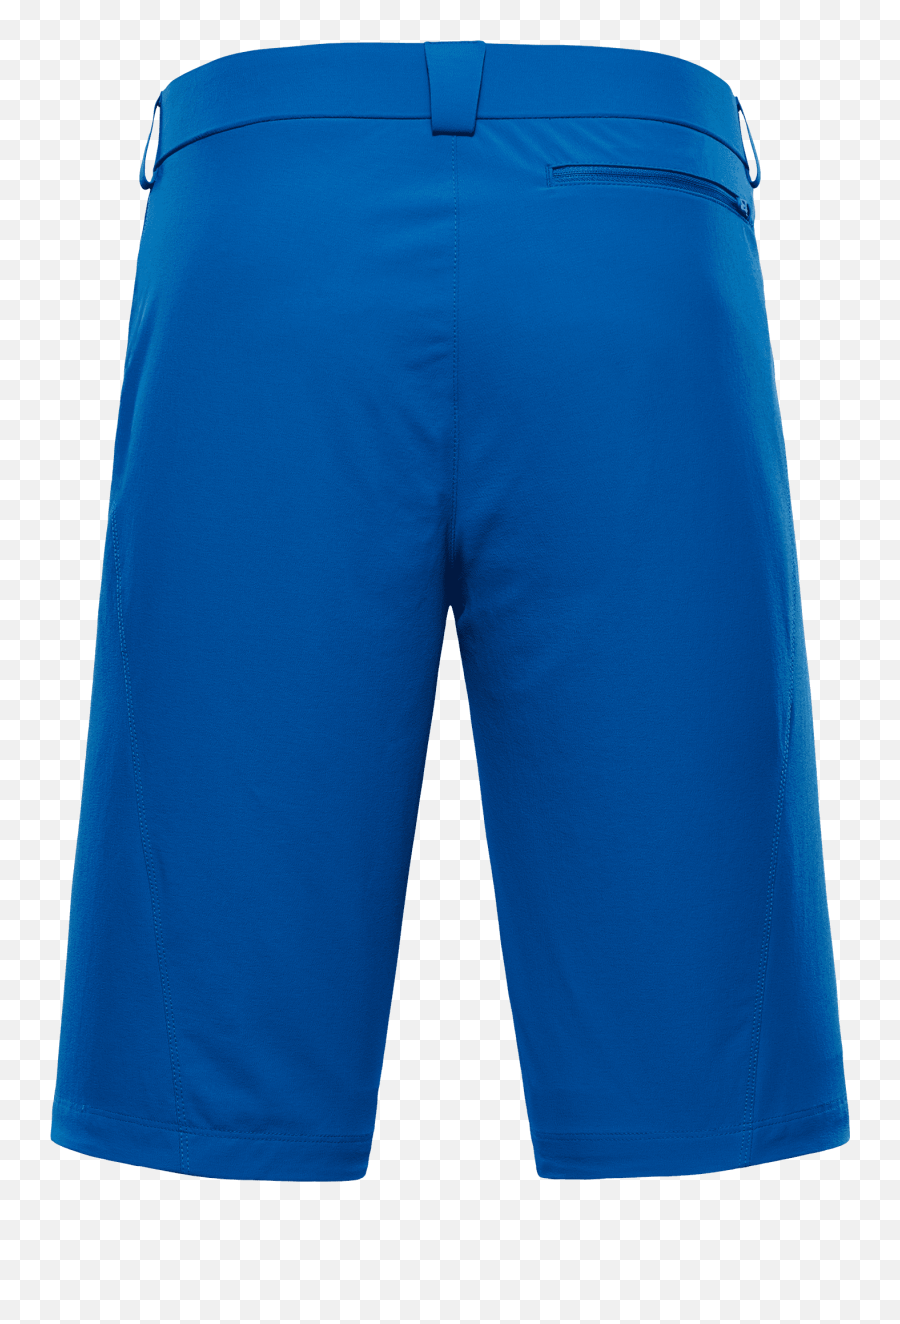 Cordura Trekking Shorts - Bermuda Shorts Png,Nike Icon Woven 2 In 1 Short